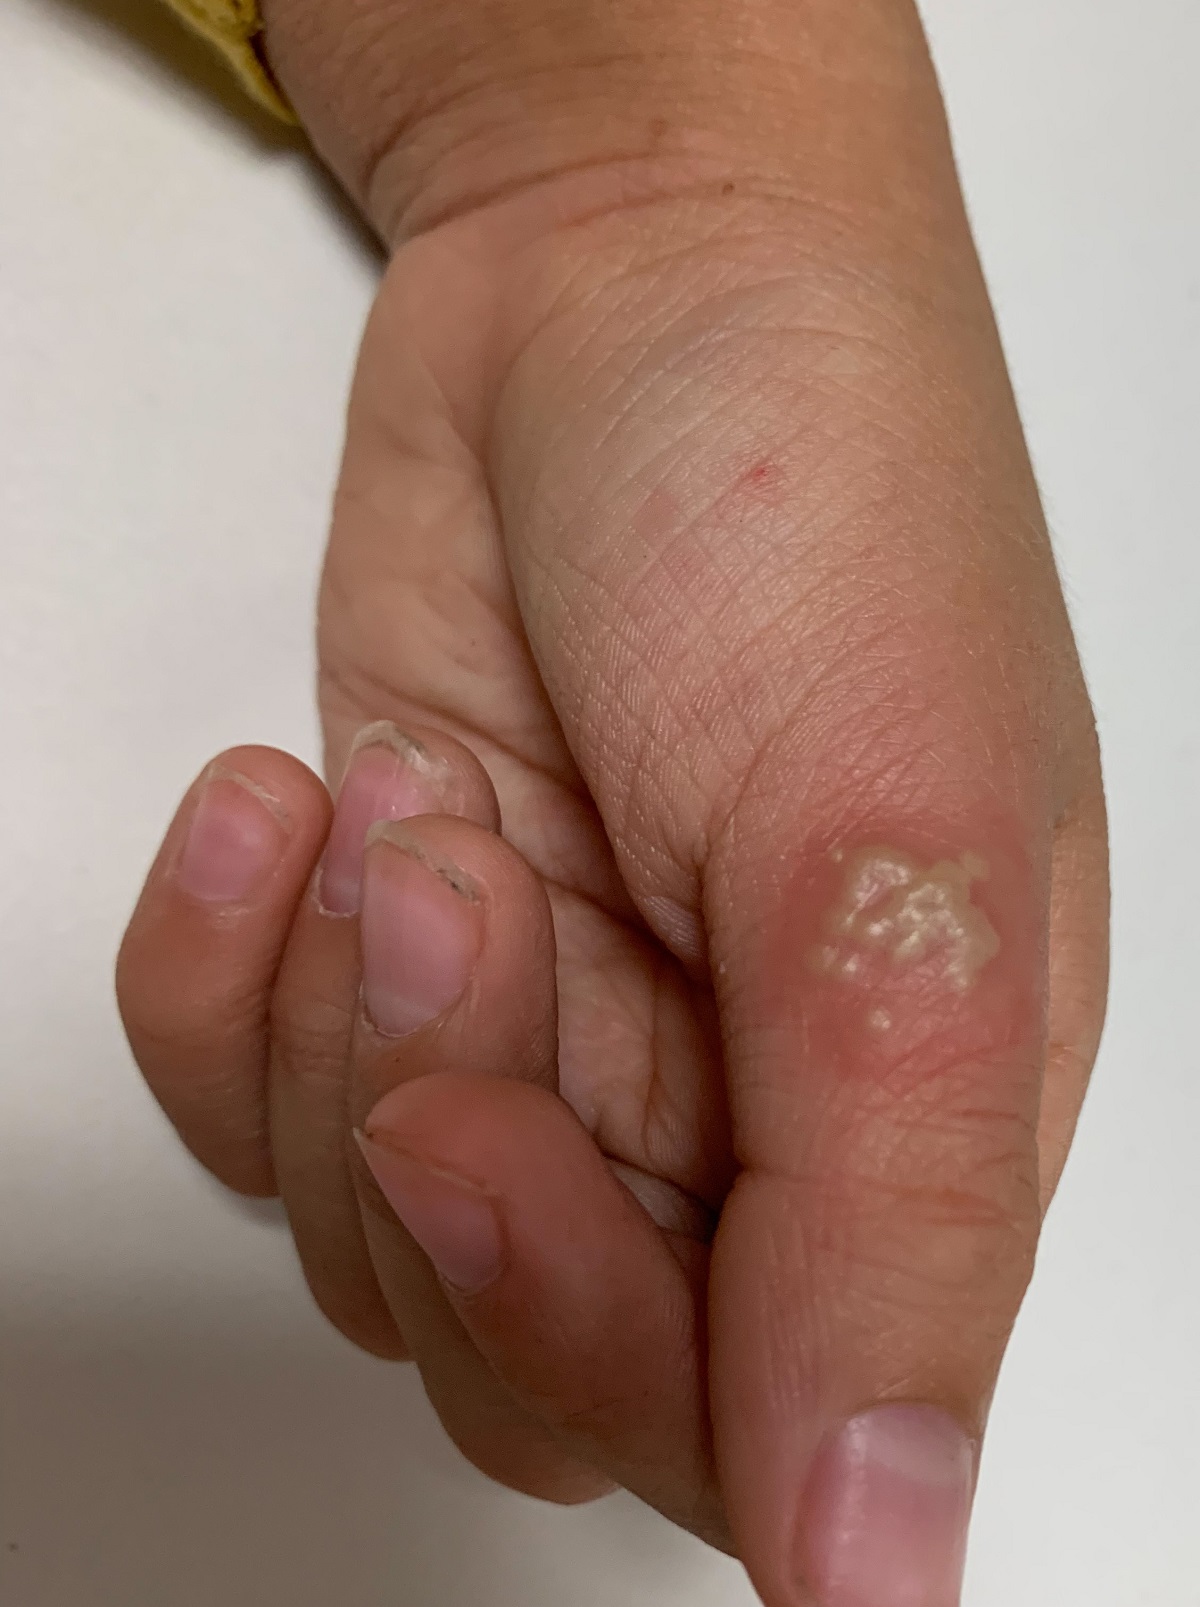 Continuum: Lesiones en dedo